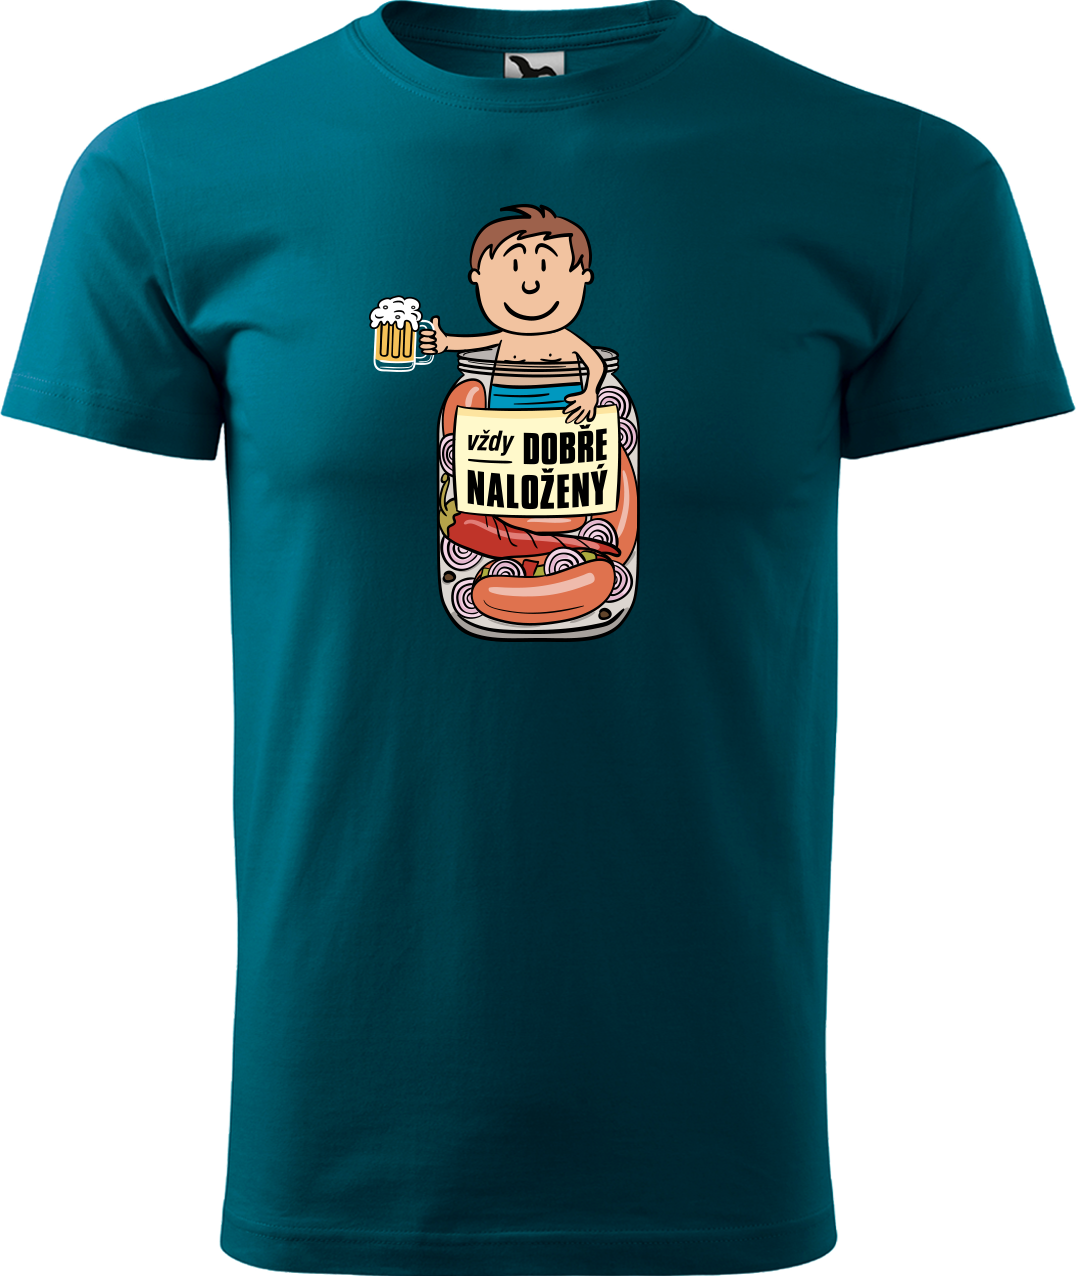 Vtipné tričko - Vždycky dobře naložený Velikost: M, Barva: Petrolejová (93)